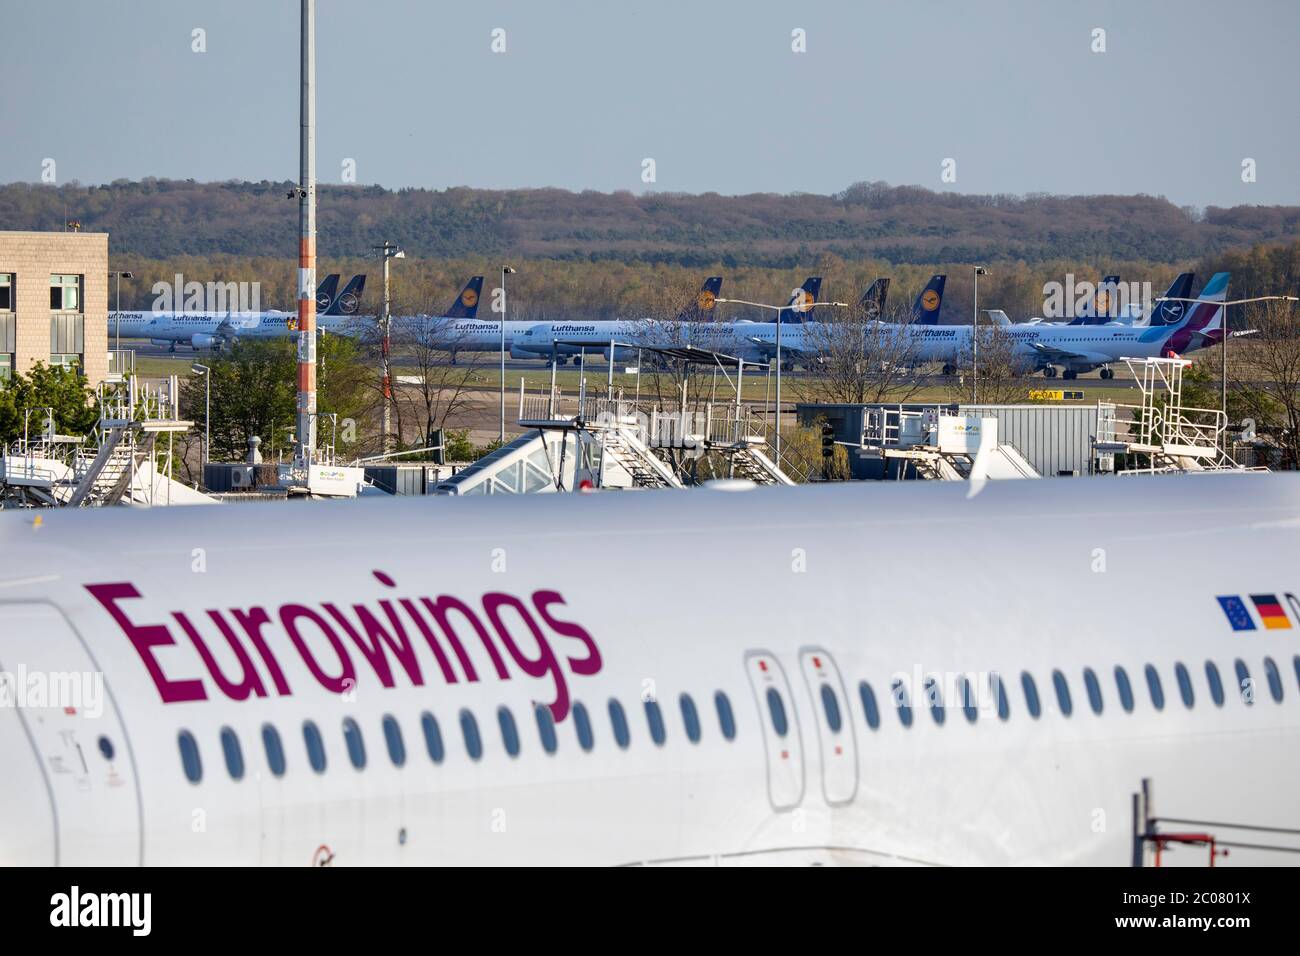 Abgestellte Flugzeuge nach vollständigem Erliegen des Personenflugverkehrs im Zusammenhang mit der Corona-Krise am Flughafen Köln/Bonn. Köln; 07.04.20 Stock Photo